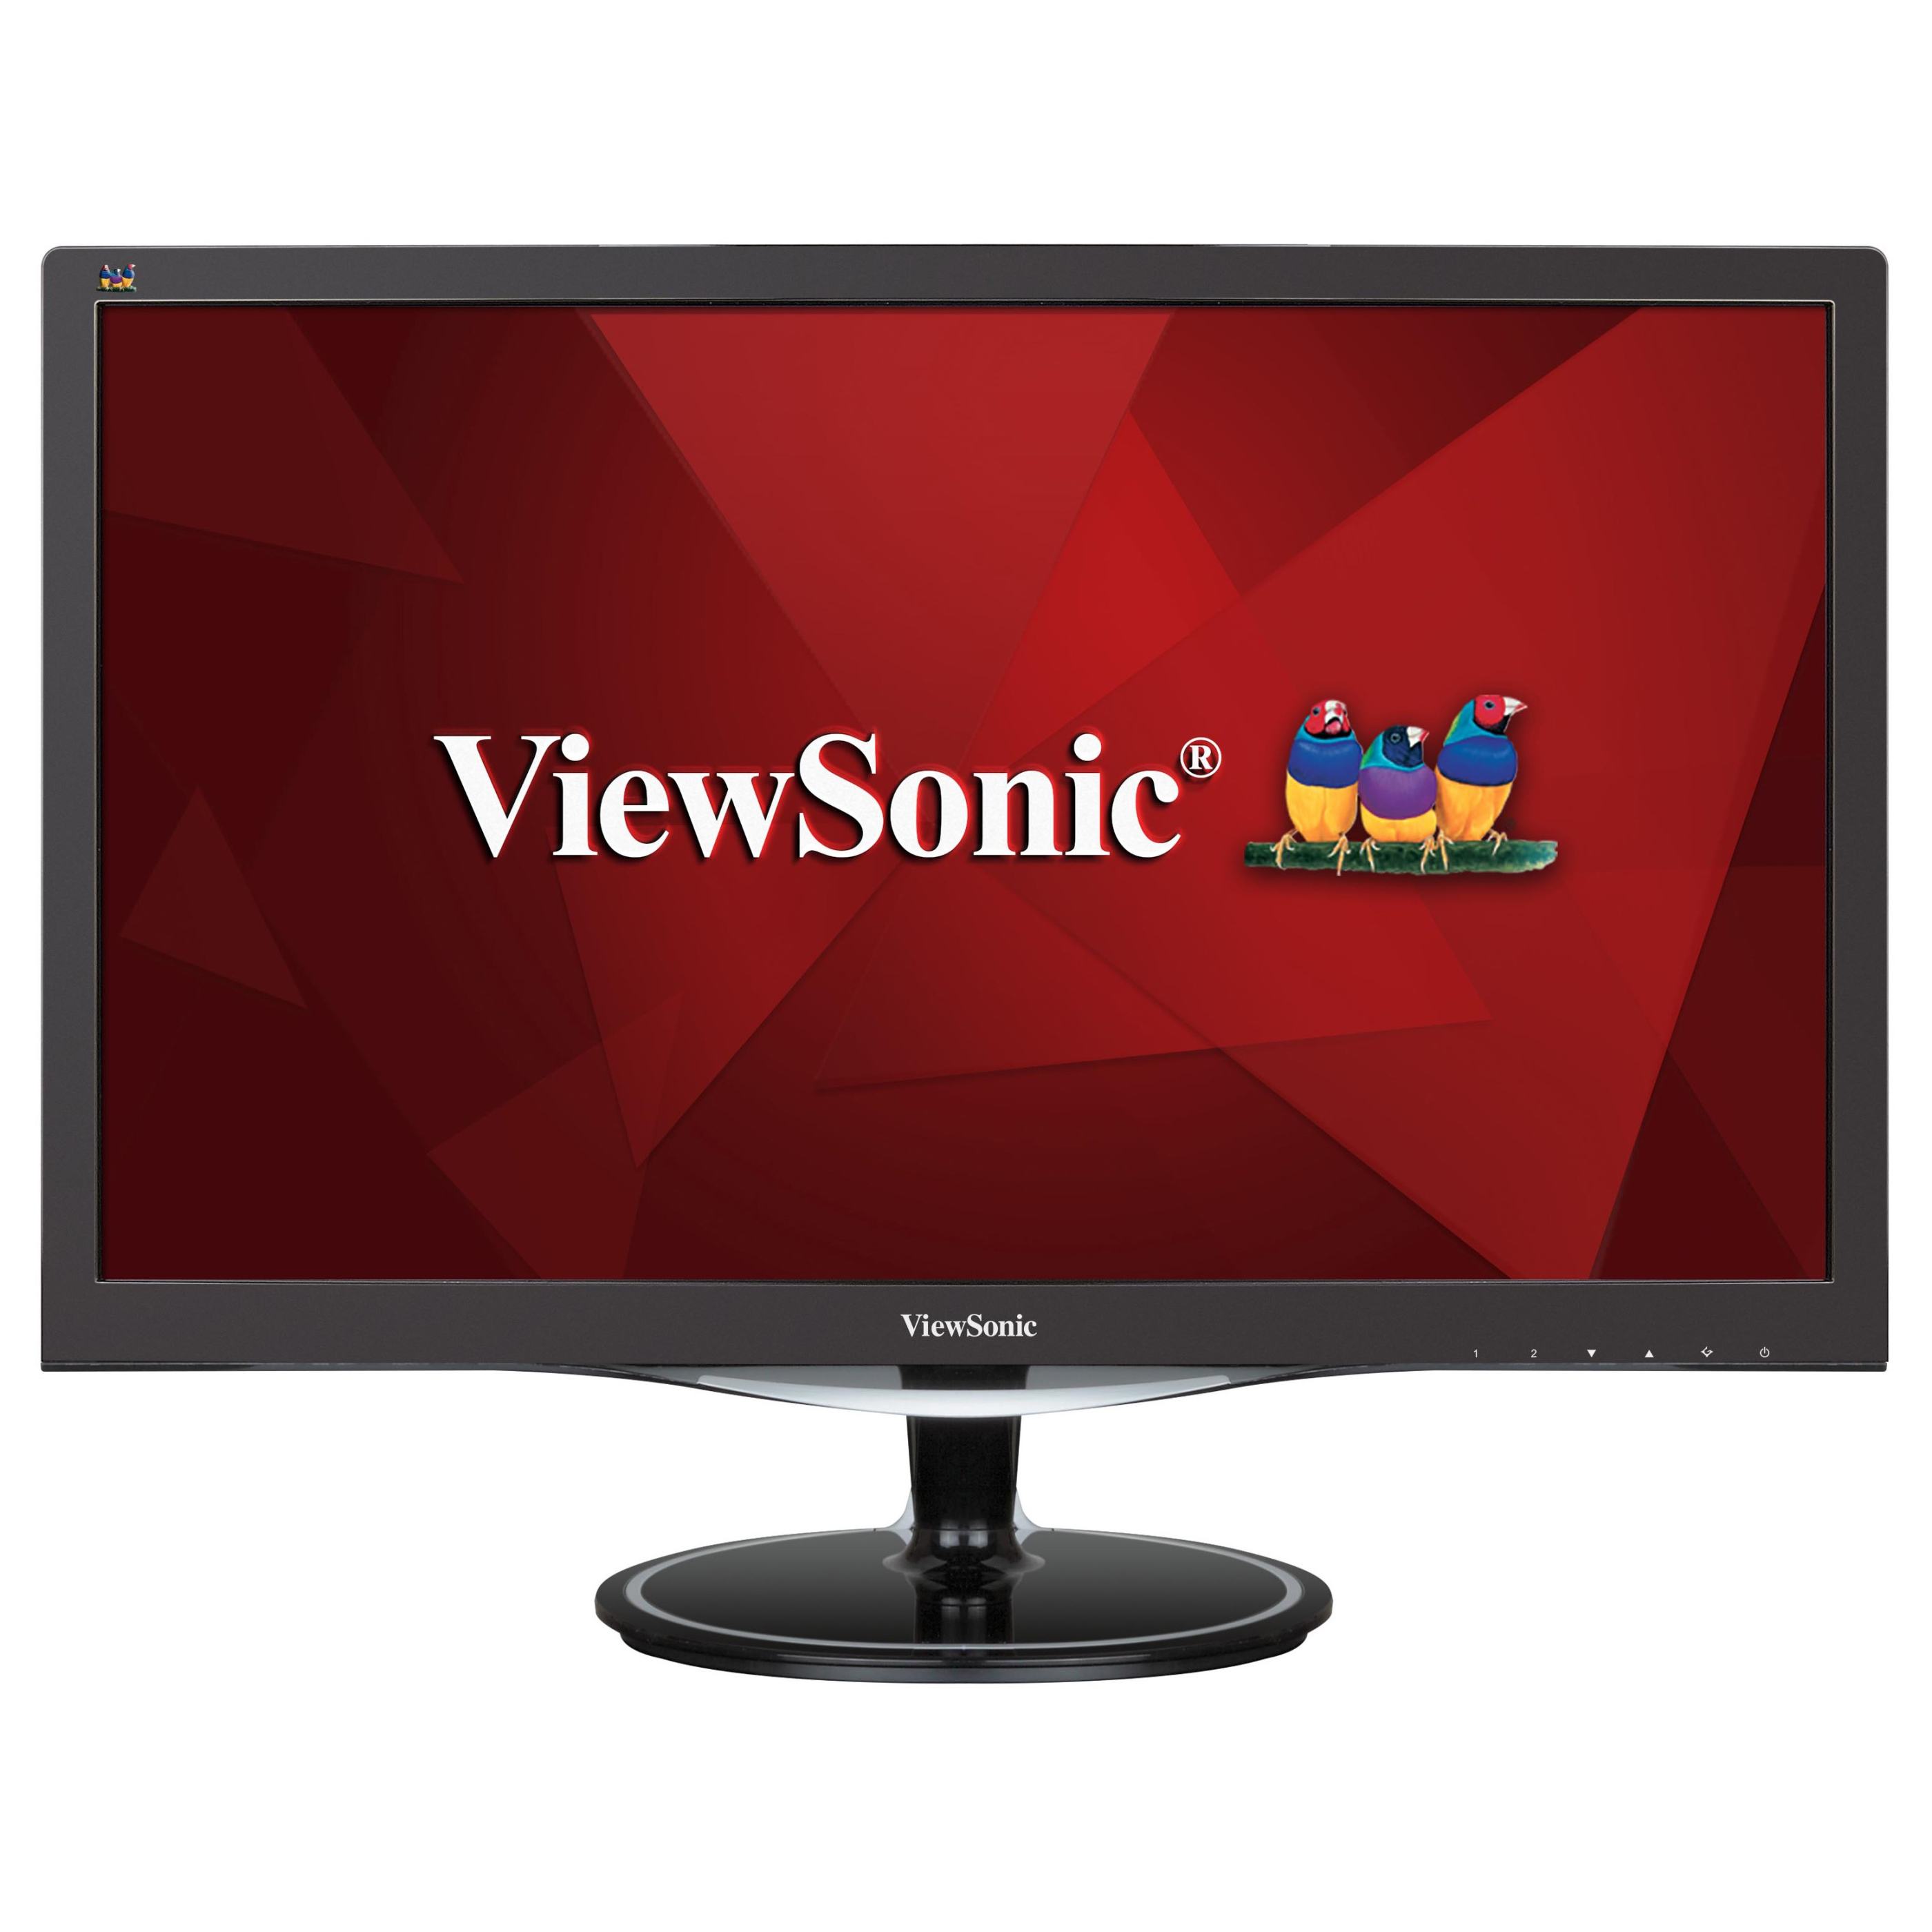 Viewsonic_VX2757MHD Monitor Deal